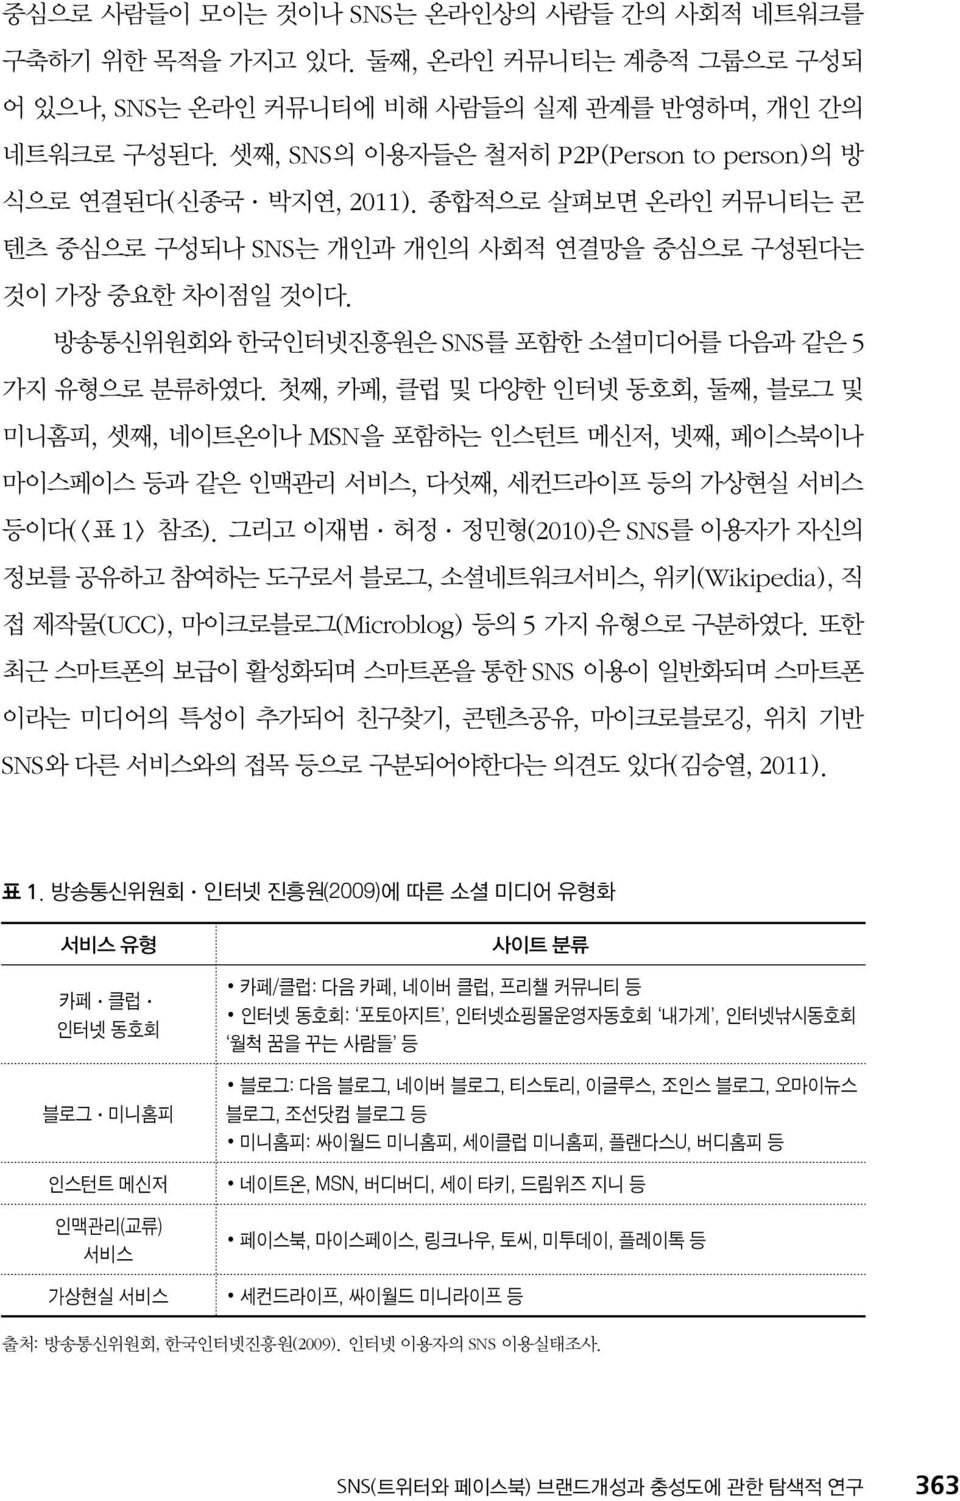 방송통신위원회와 한국인터넷진흥원은 SNS를 포함한 소셜미디어를 다음과 같은 5 가지 유형으로 분류하였다.